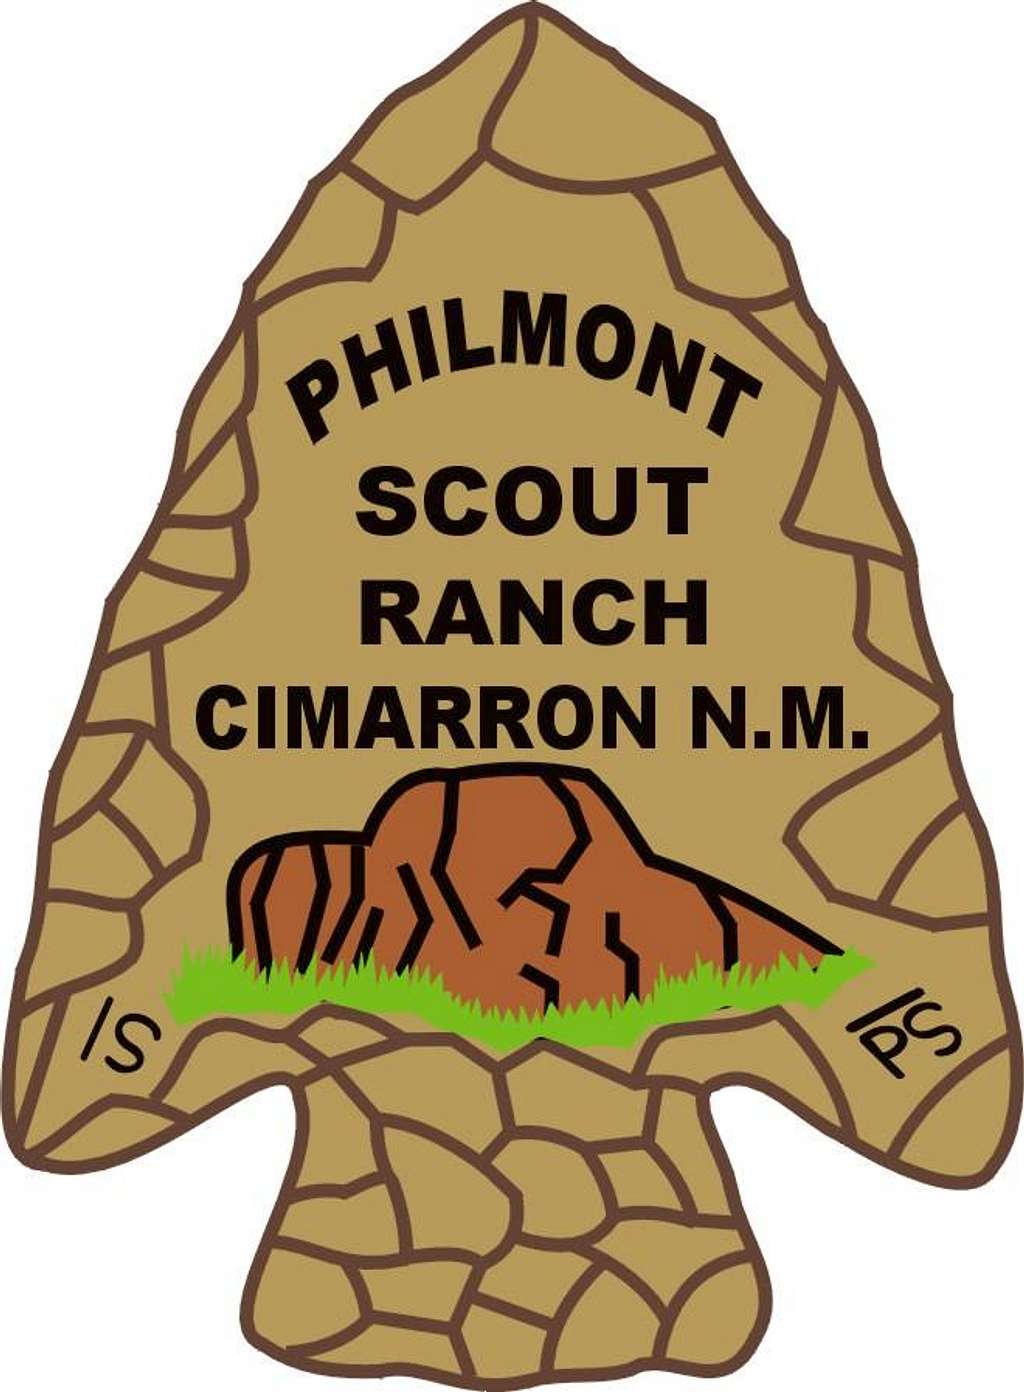 Philmont Logo